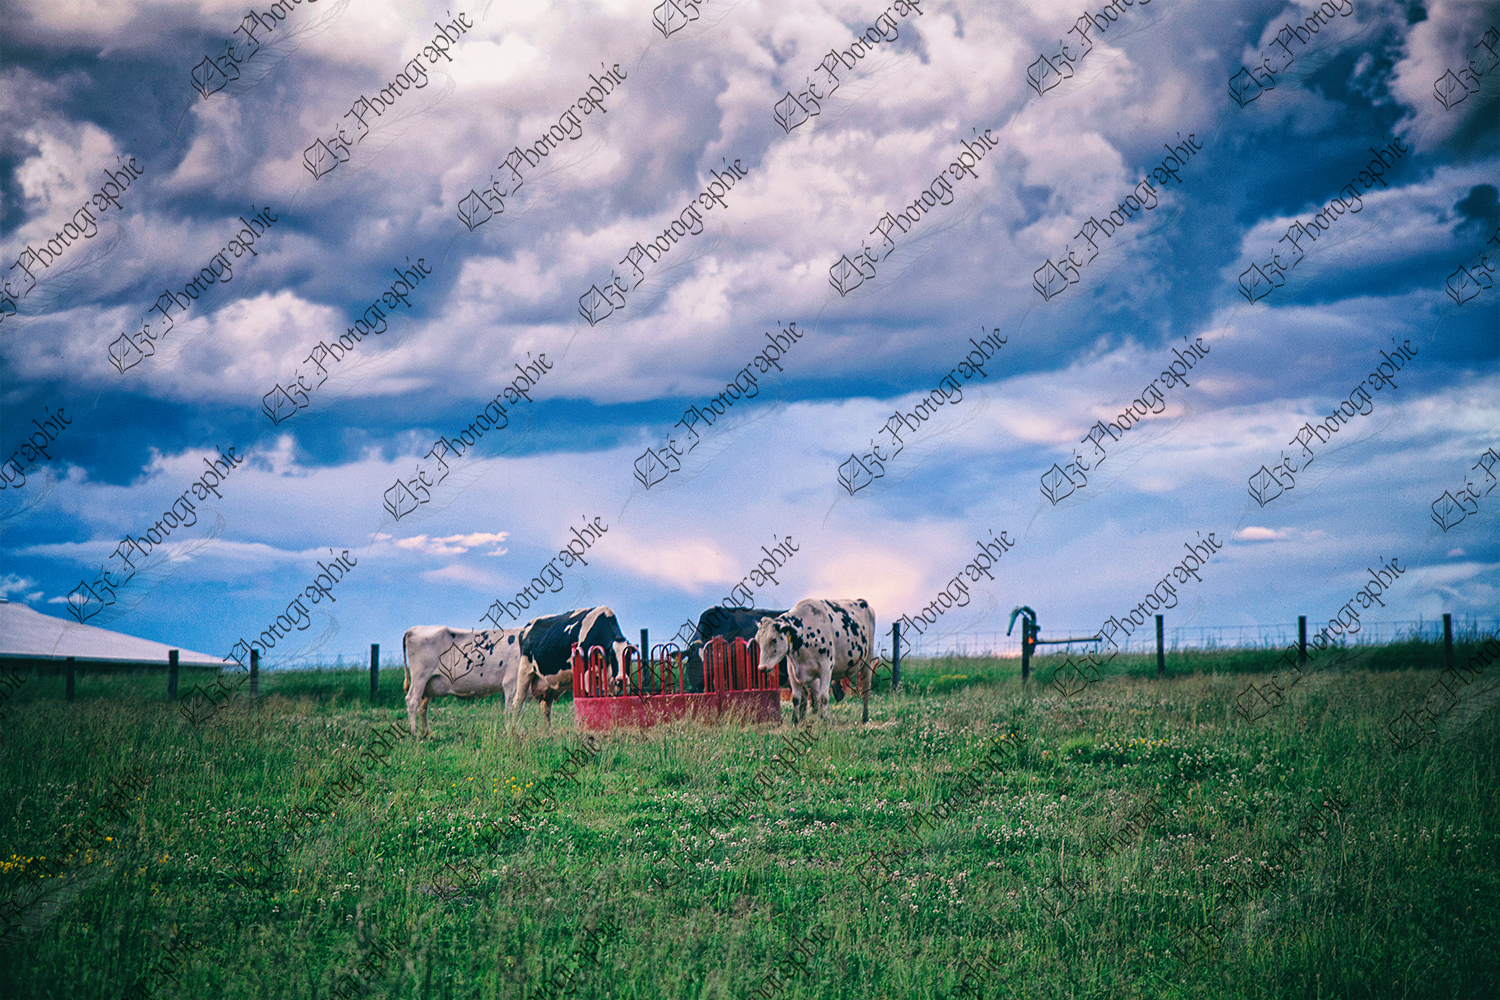 elze_photo_2346_ete_pature_vaches_holstein_pasture_cows